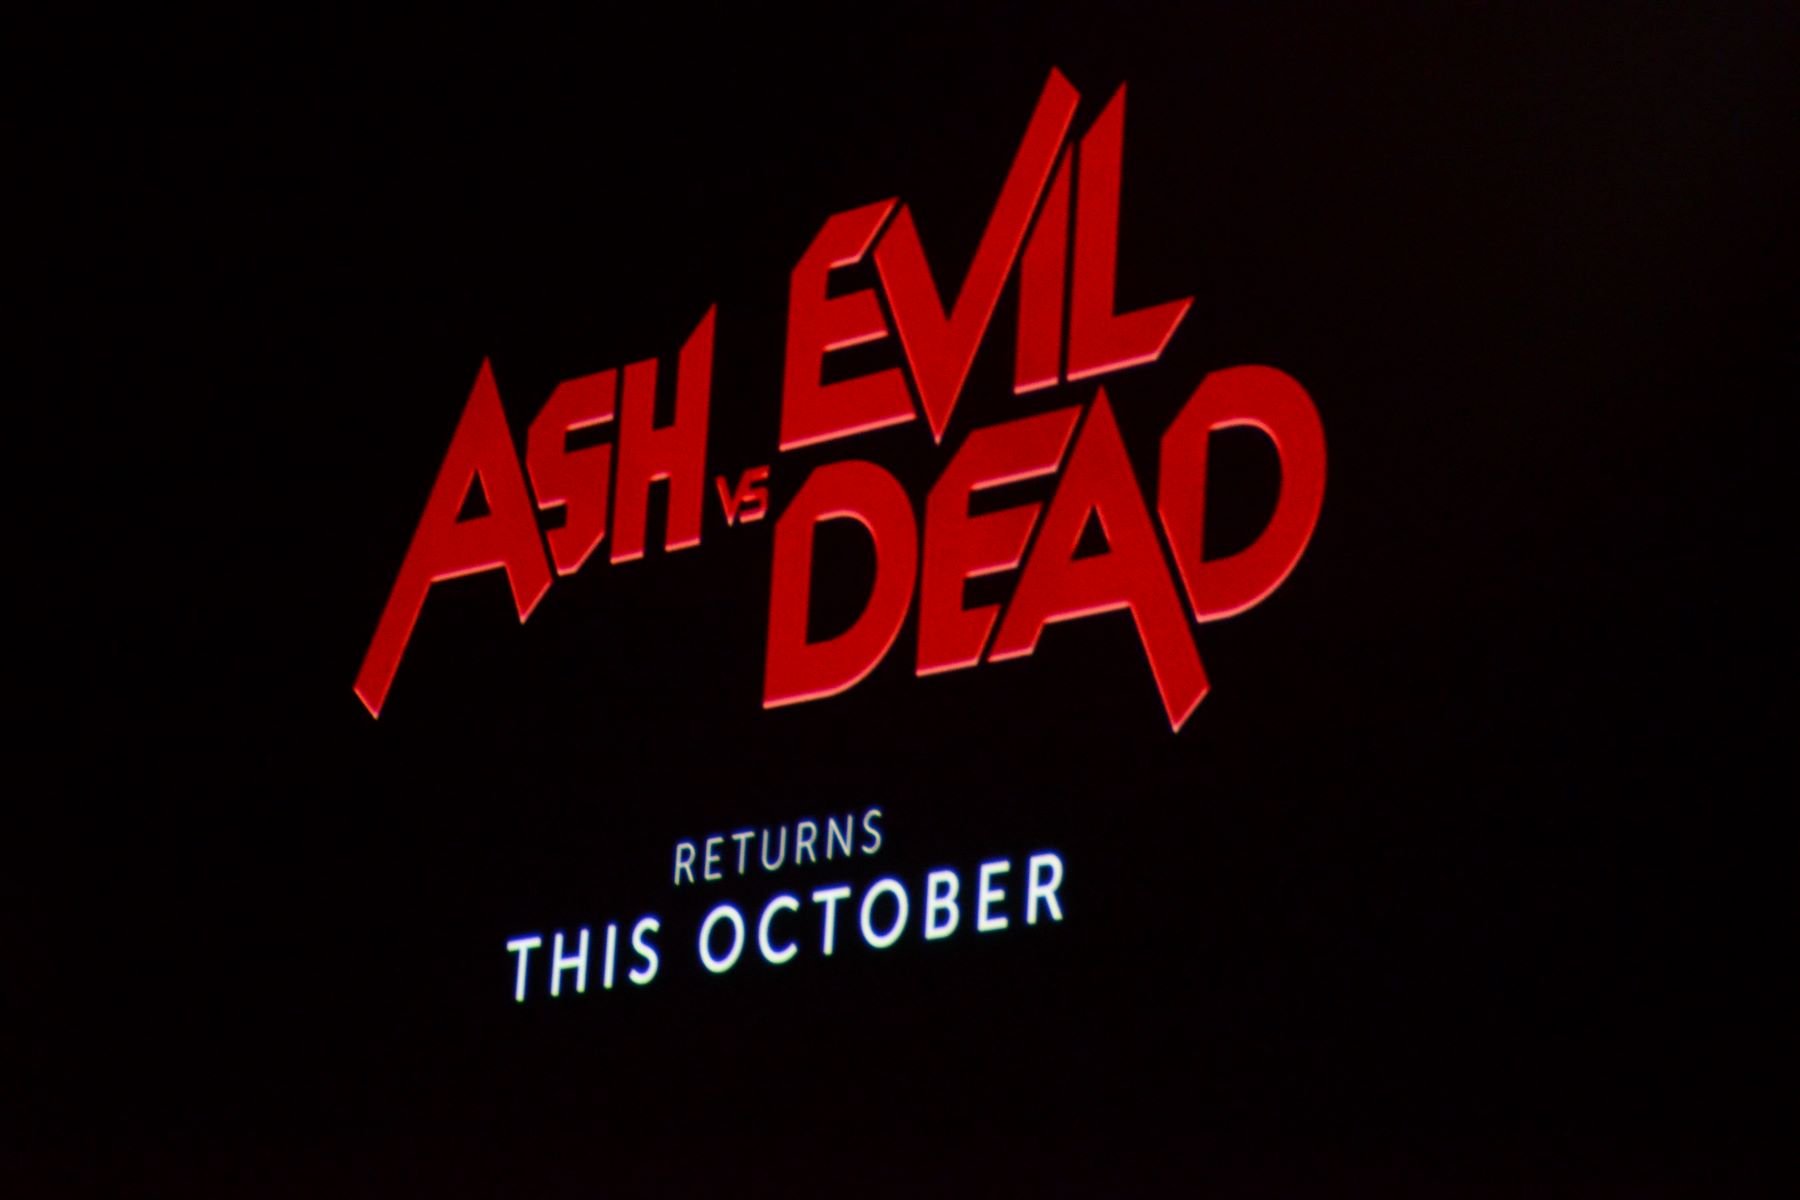 'Ash vs. Evil Dead' Comic-Con panel presentation in San Diego, California